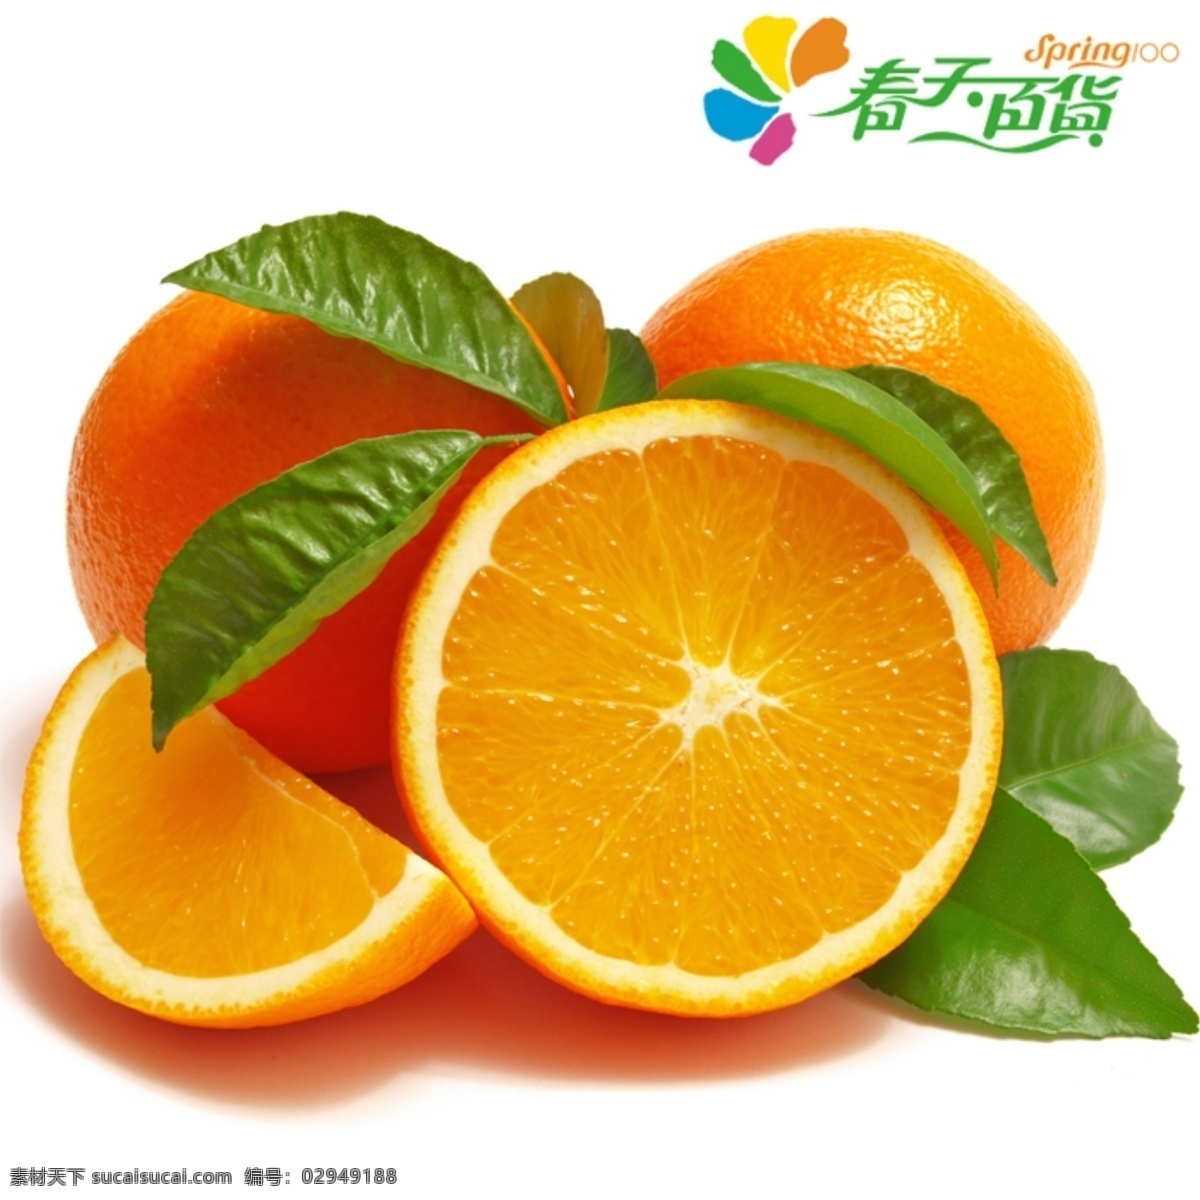 脐橙主图 脐橙 水果 信丰 龙沟 橙子 新鲜 果子 psd素材 分层